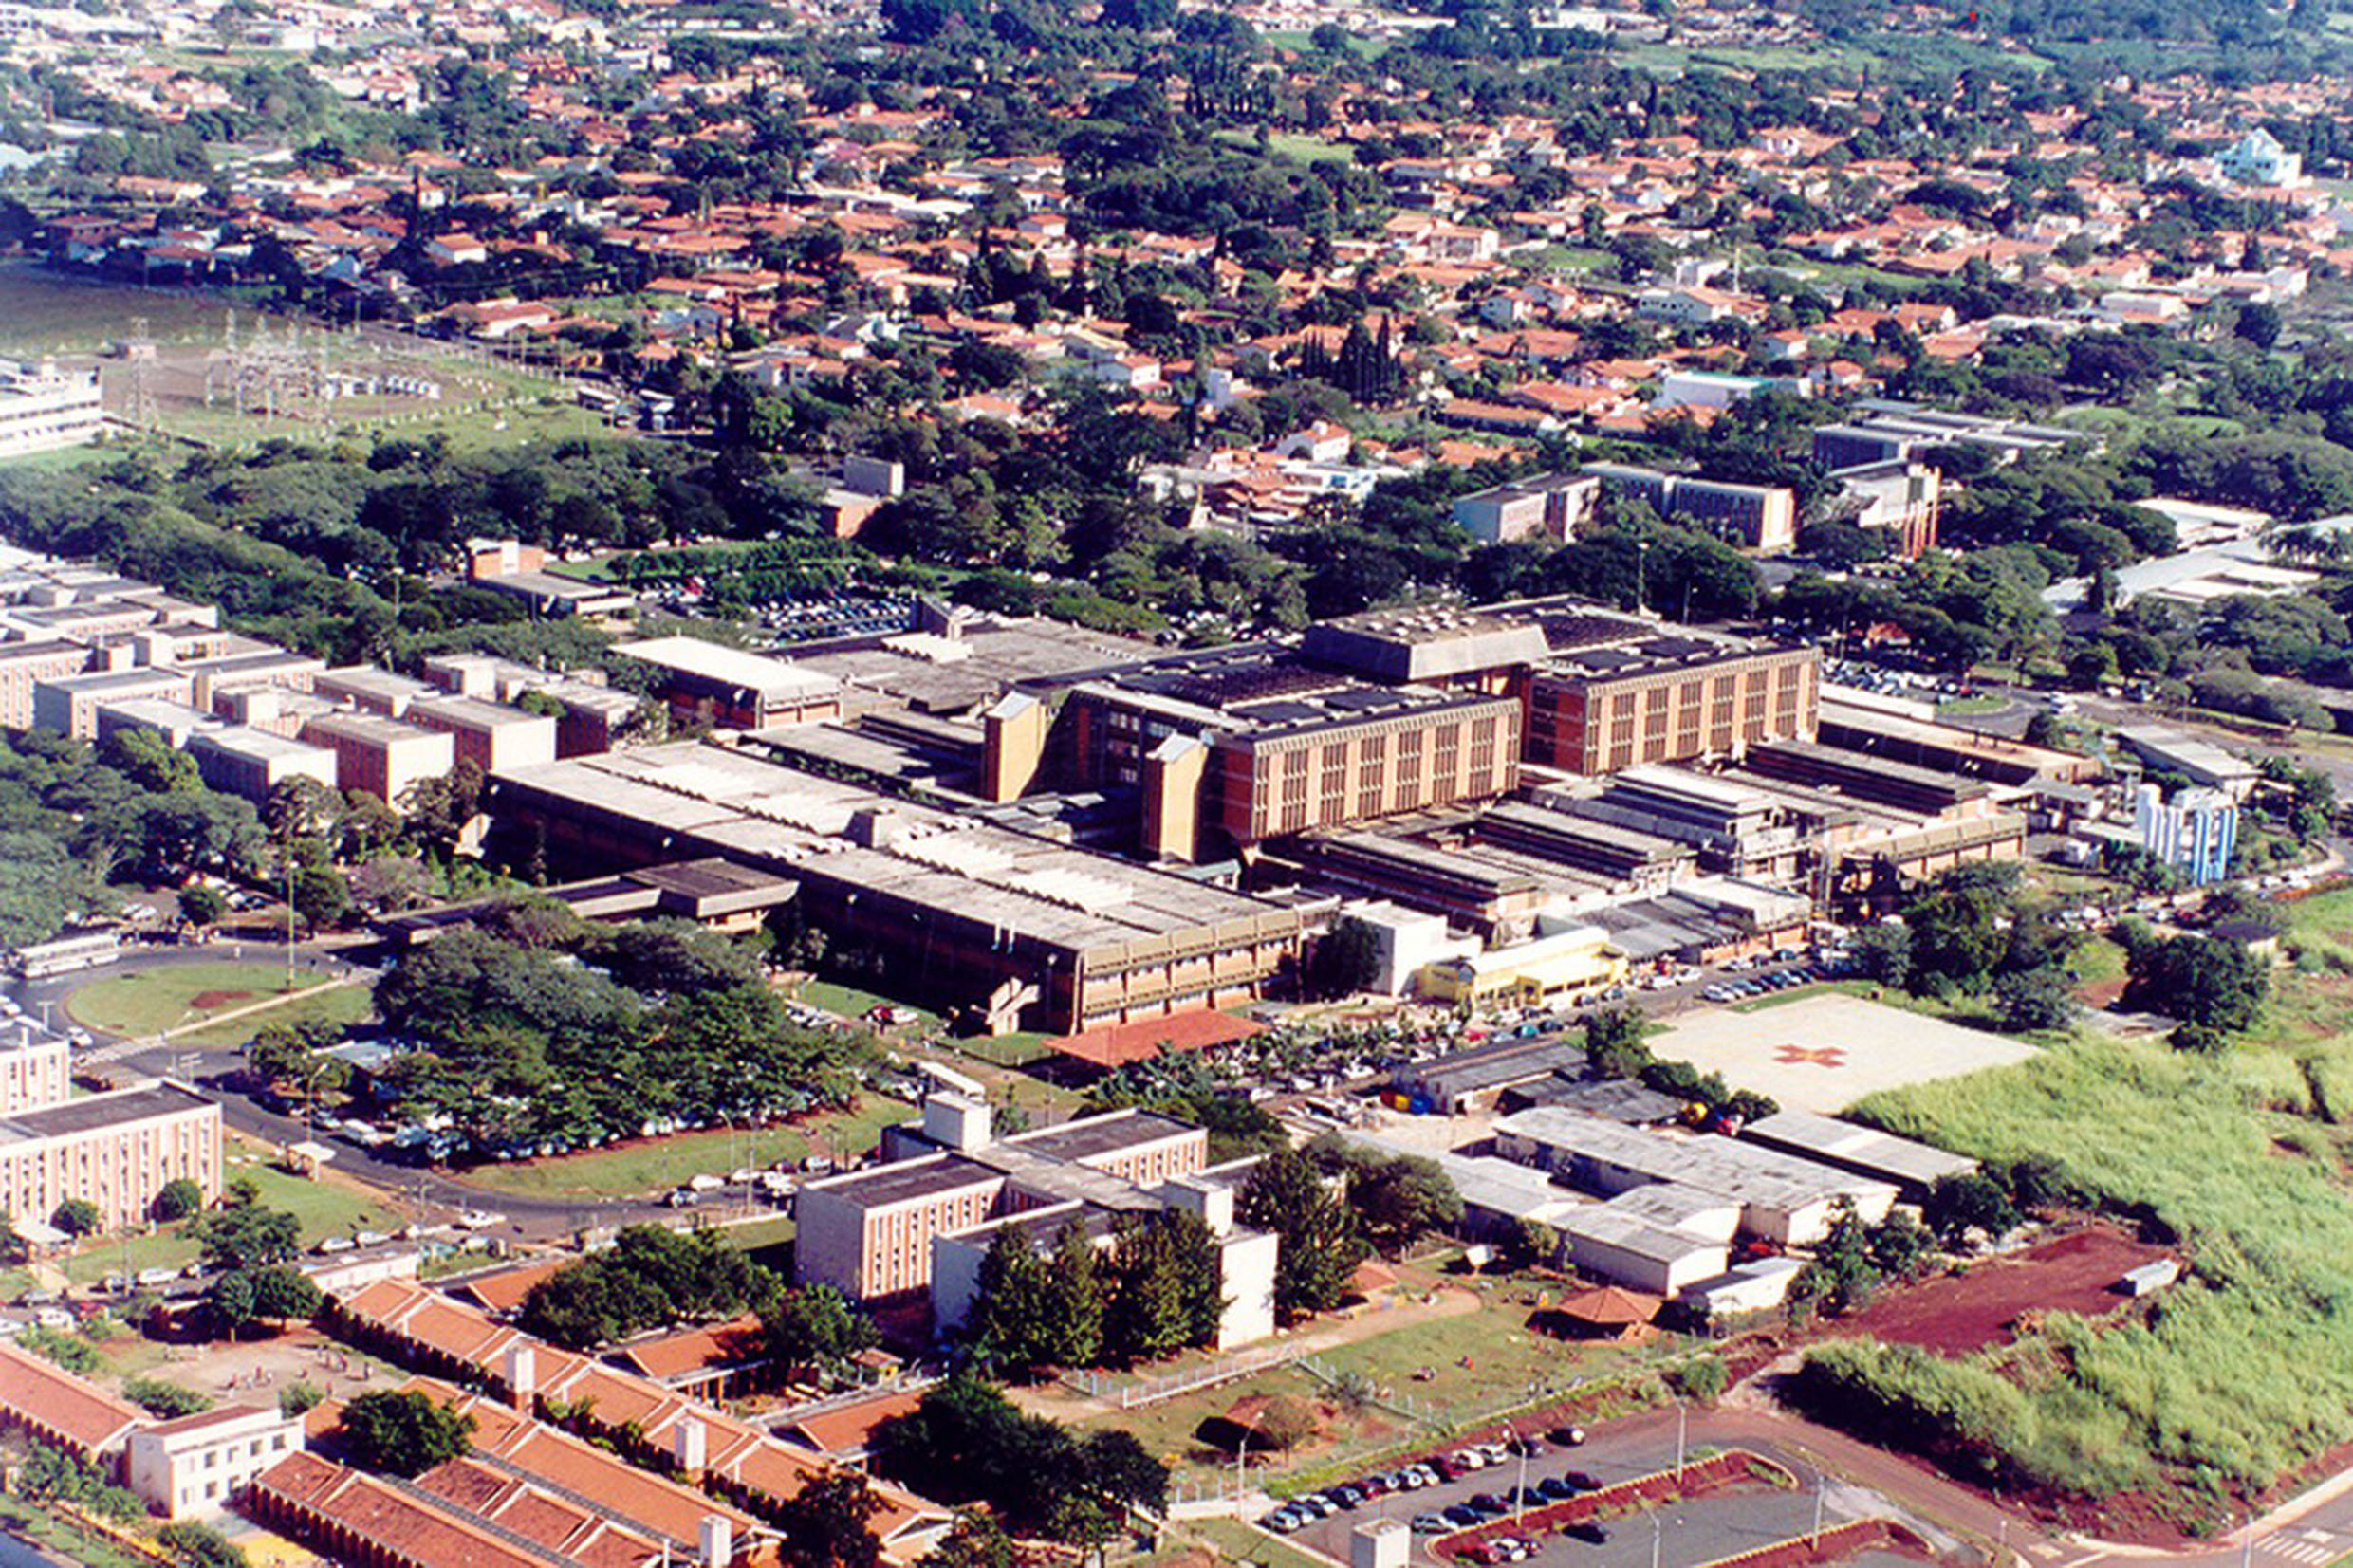 Vista area do Hospital de Clnicas - Campinas<a style='float:right;color:#ccc' href='https://www3.al.sp.gov.br/repositorio/noticia/N-05-2021/fg267317.jpg' target=_blank><i class='bi bi-zoom-in'></i> Clique para ver a imagem </a>